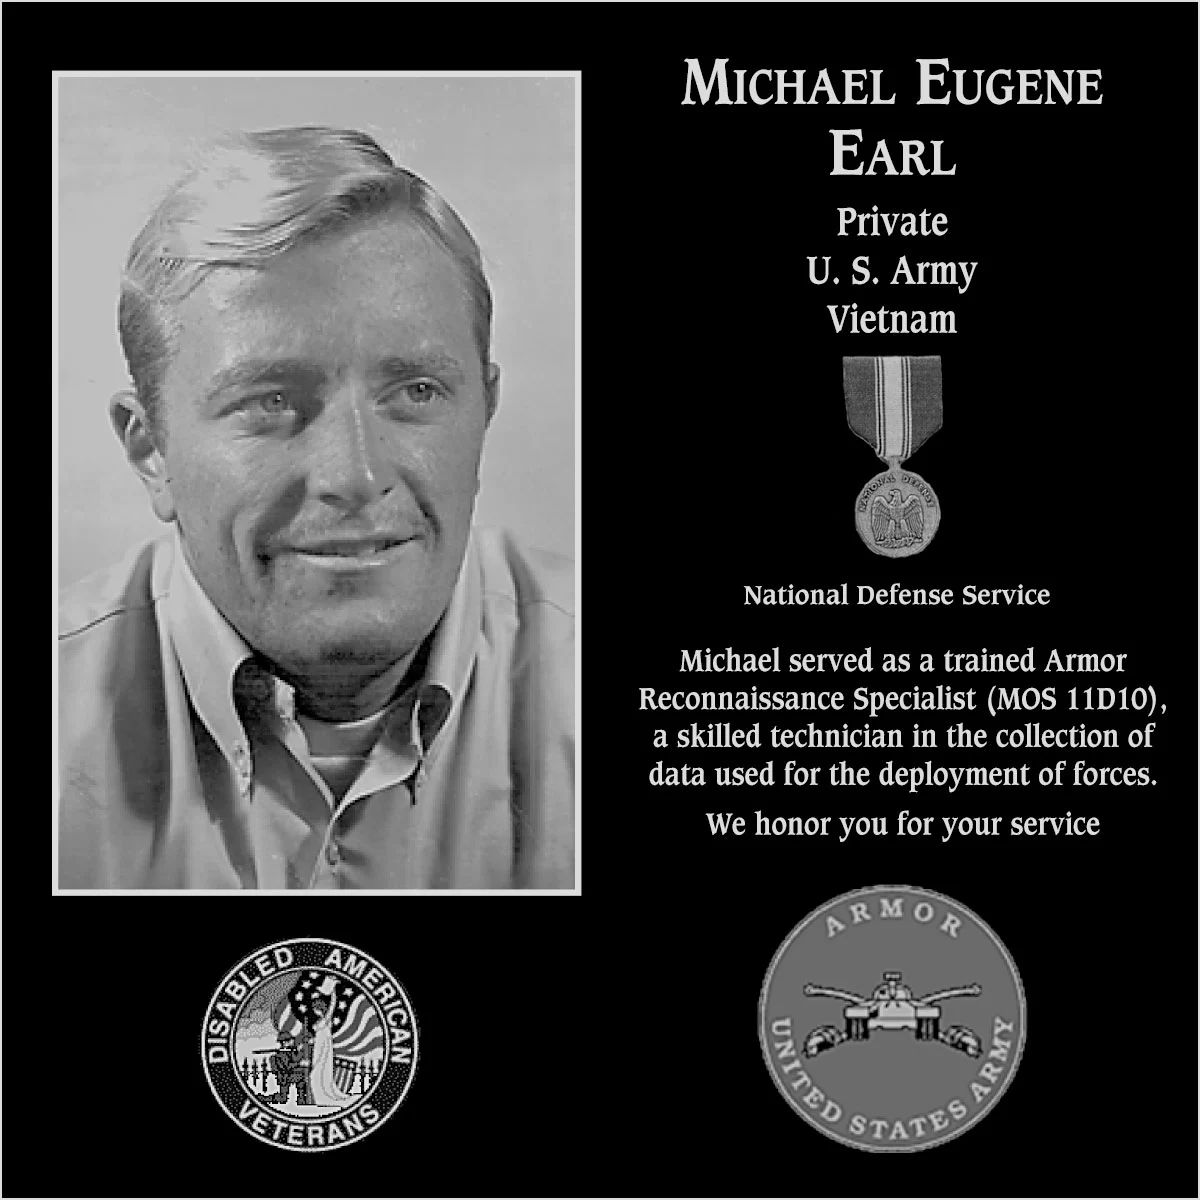 Michael Eugene Earl